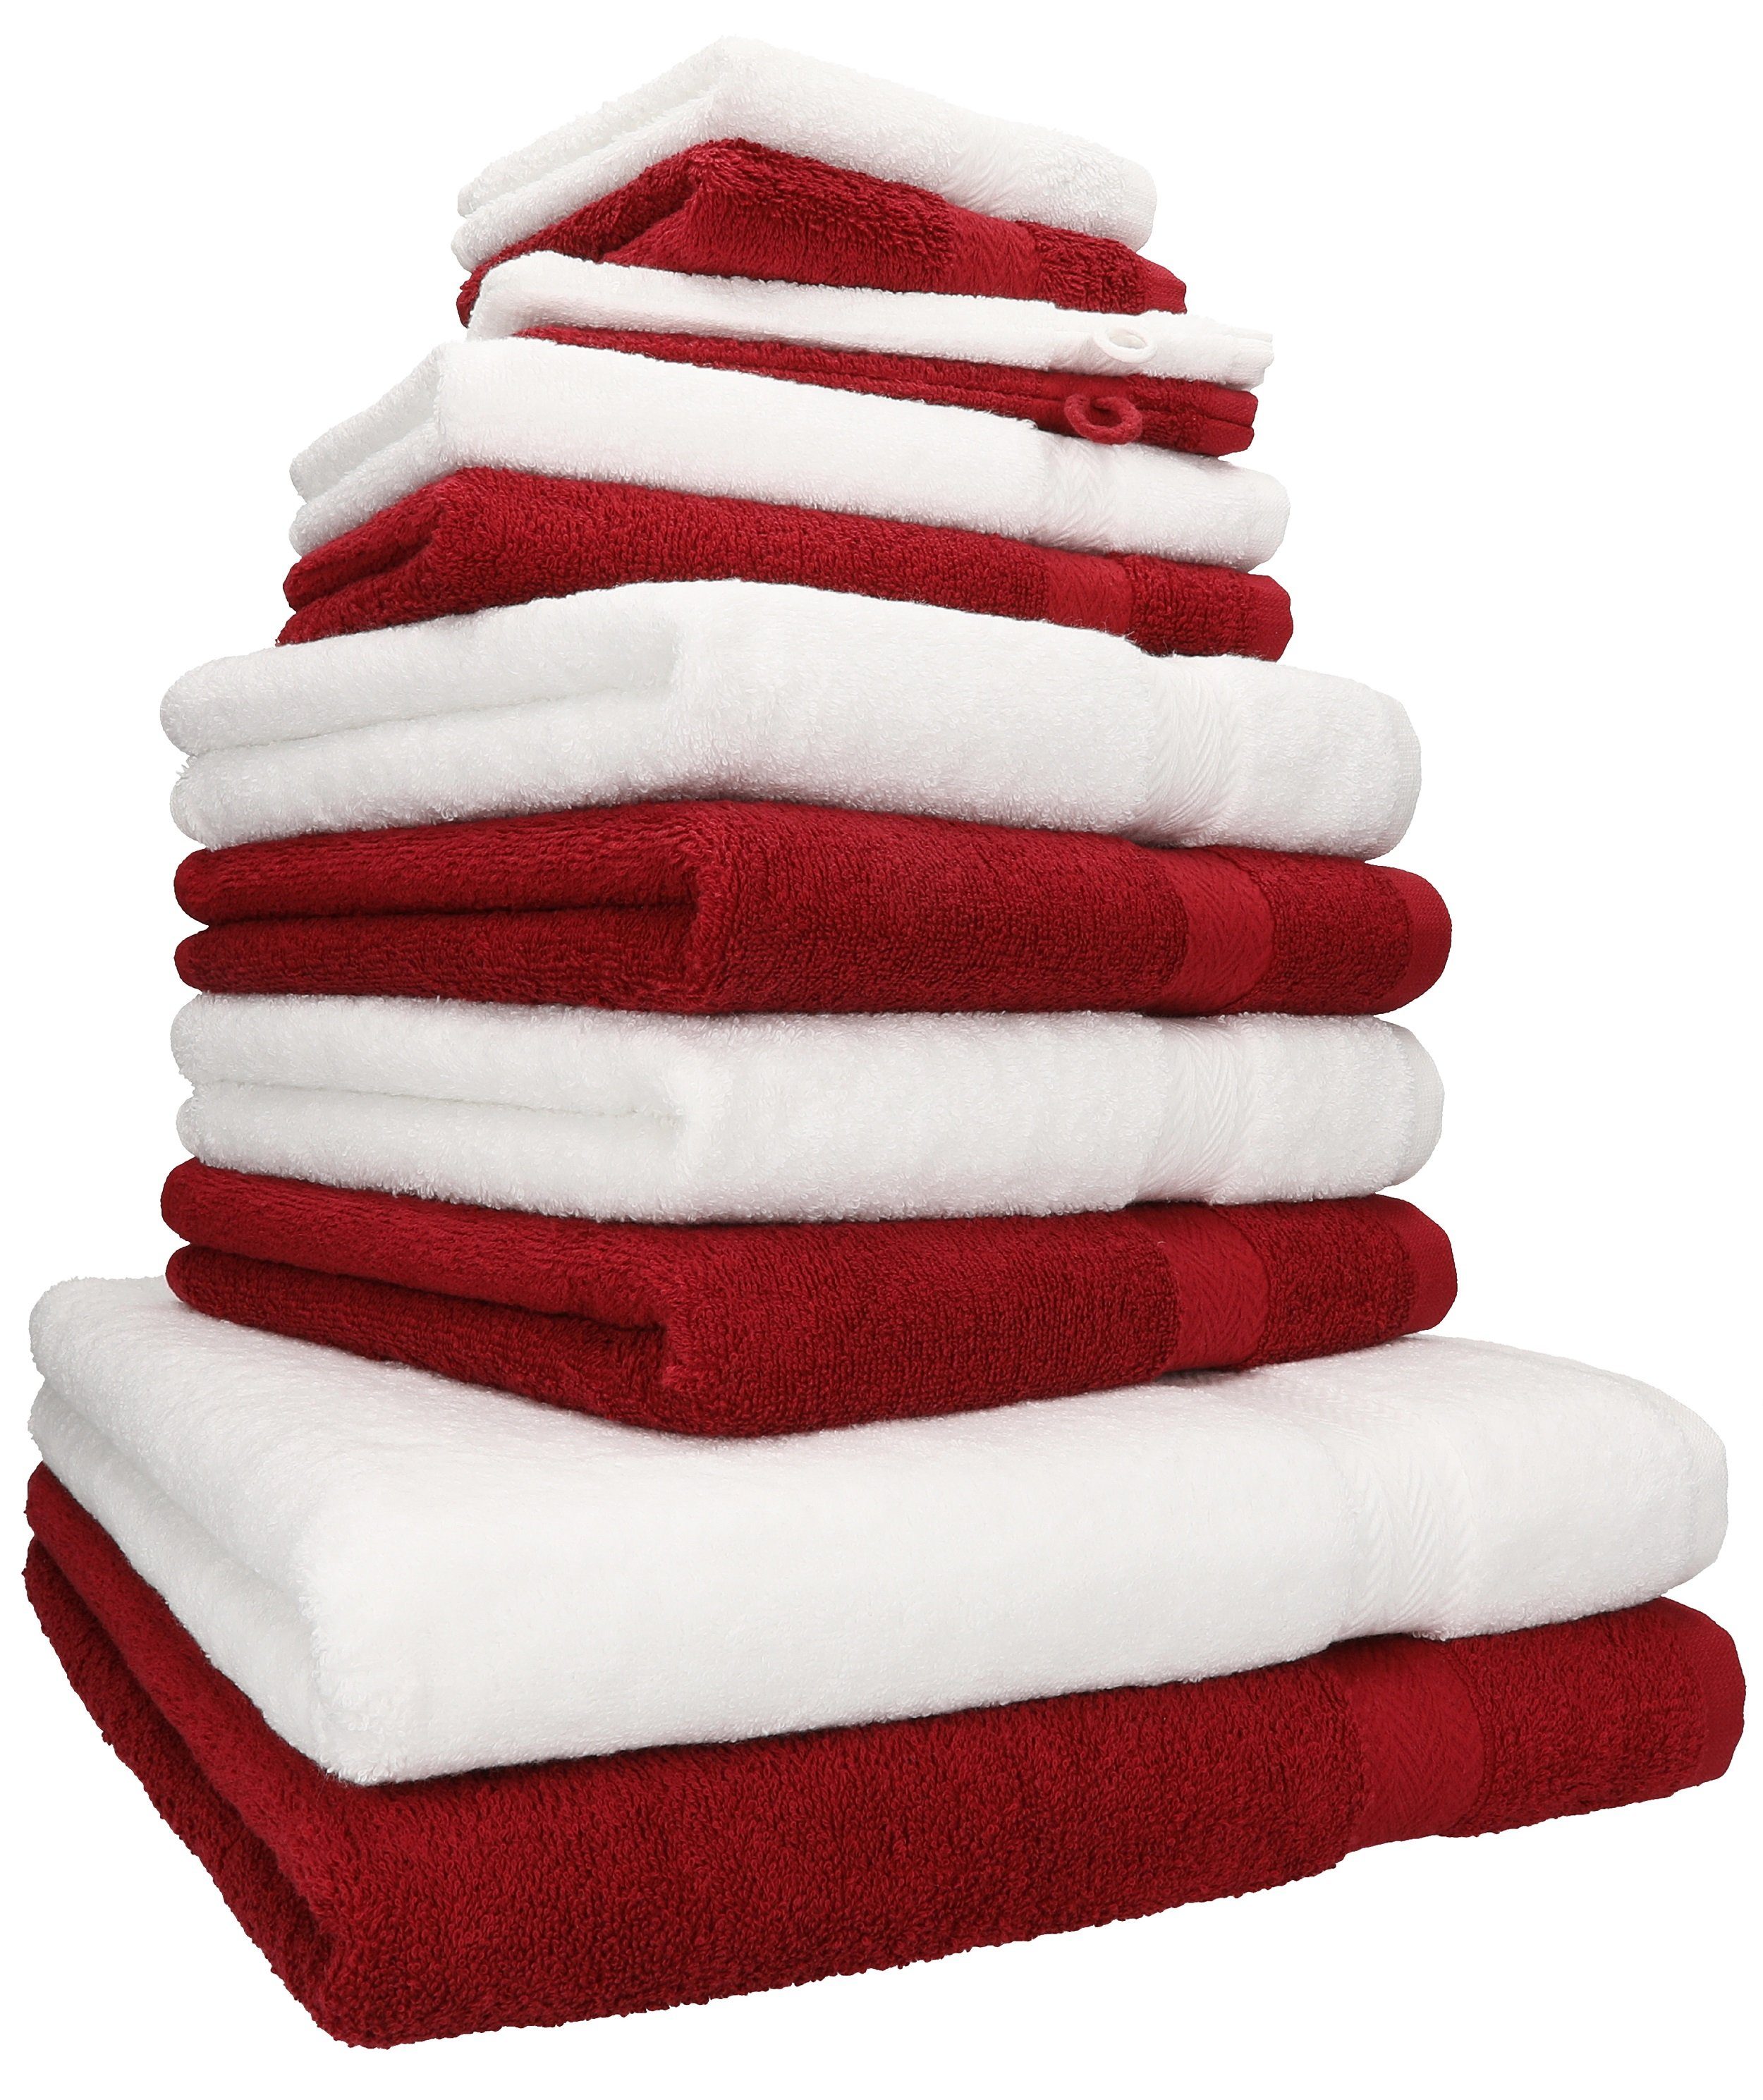 Betz Handtuch Set 12-TLG. Handtuch Set Premium Farbe weiß/rubinrot, 100% Baumwolle, (12-tlg) | Handtuch-Sets